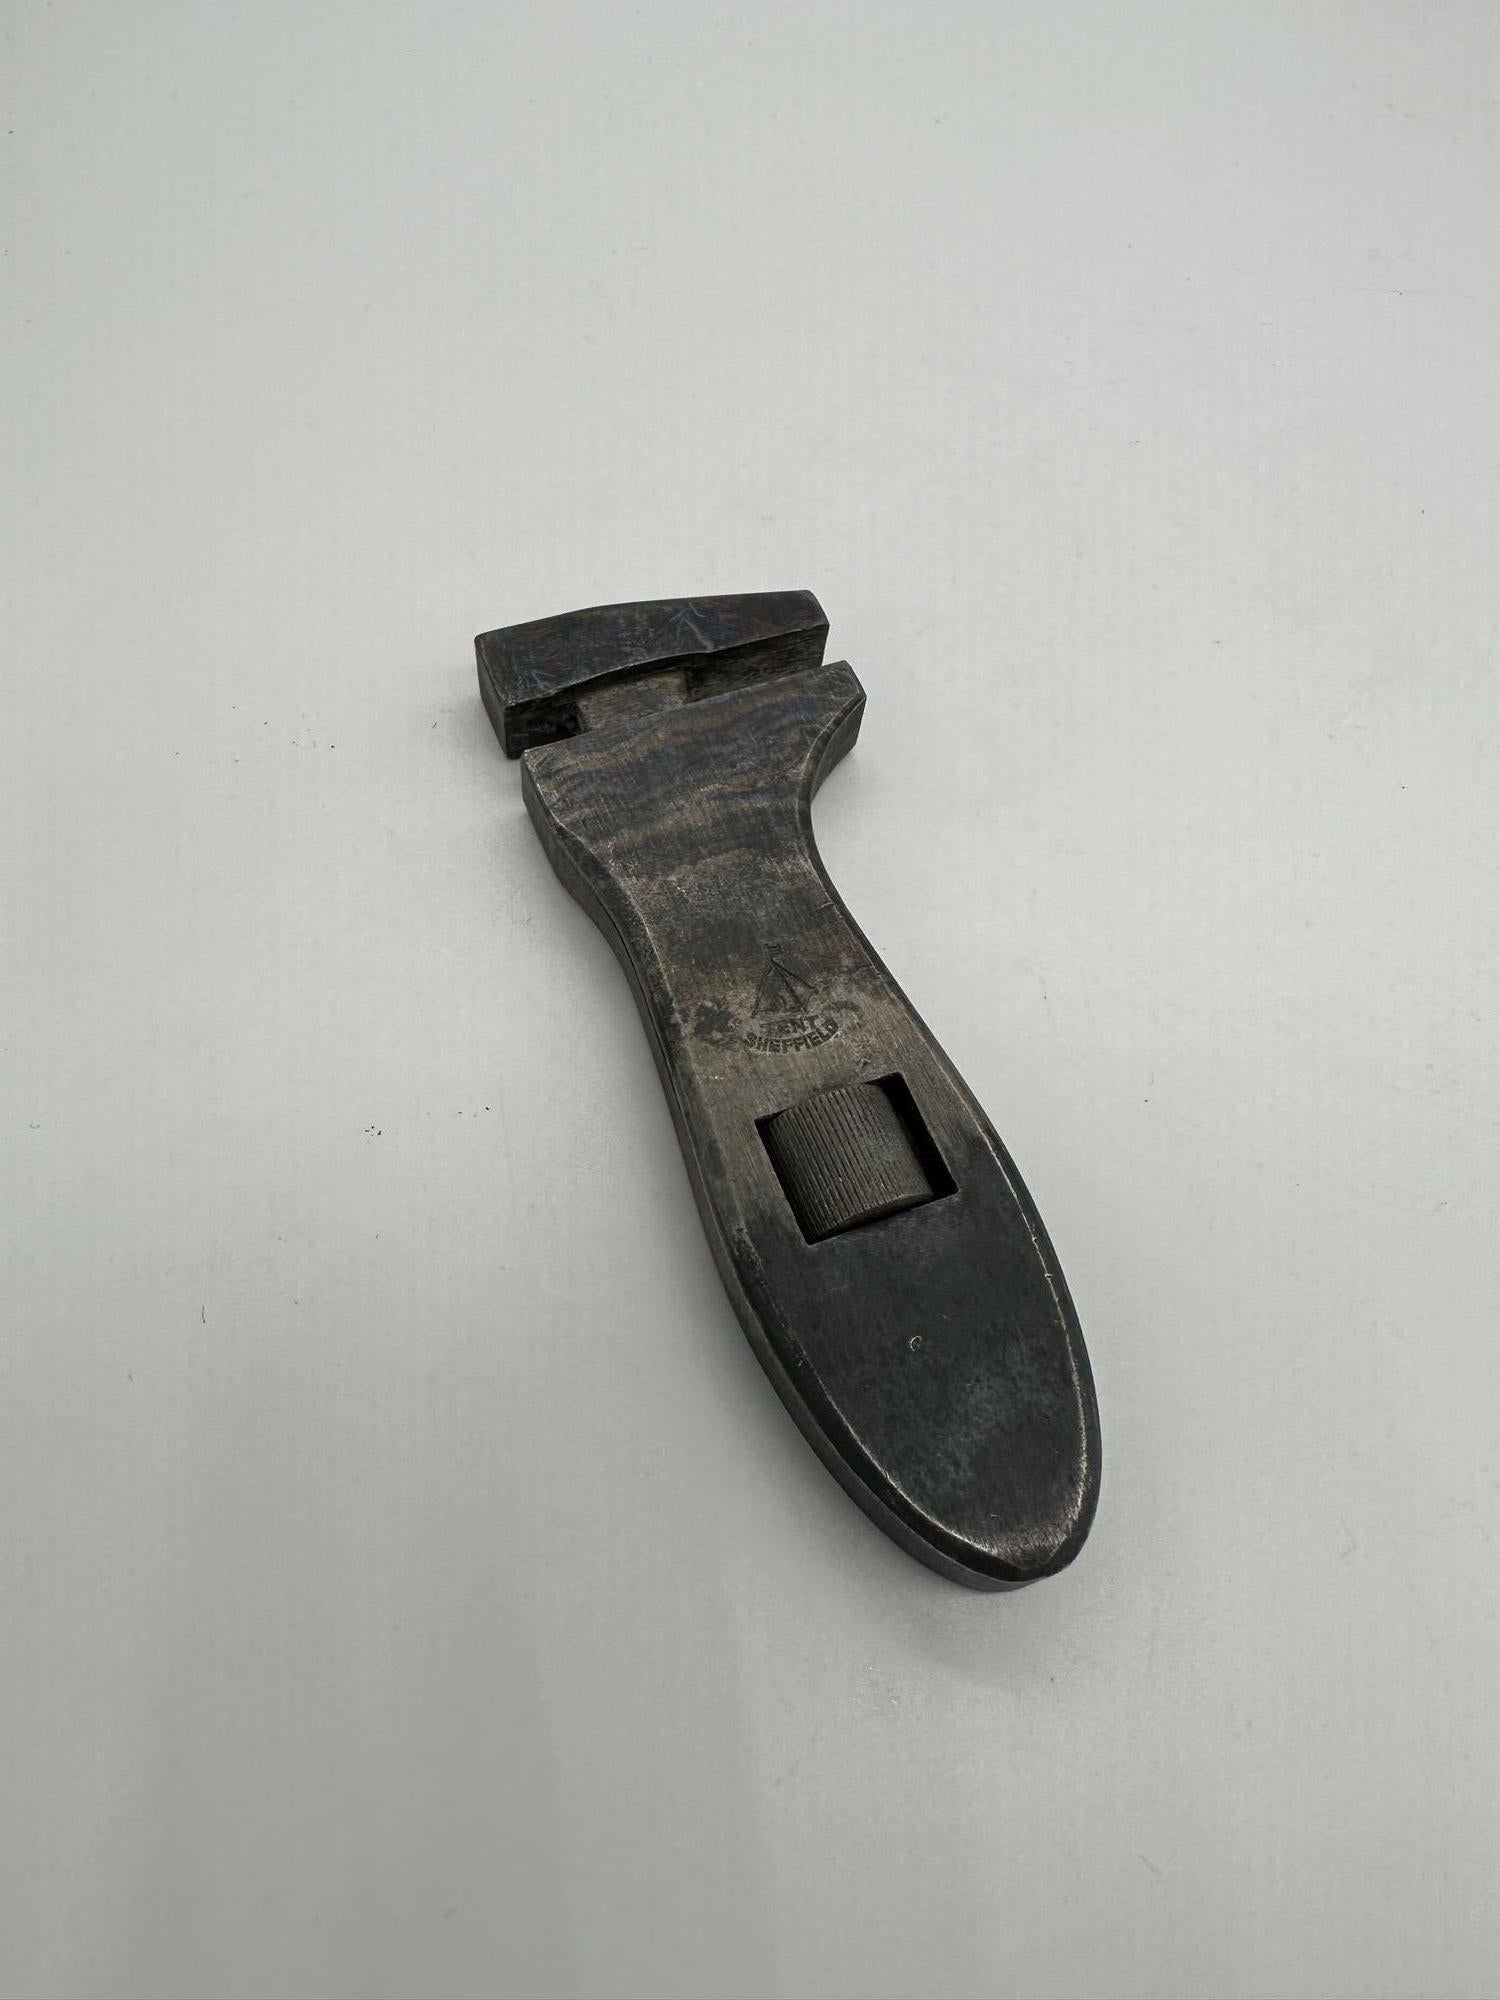 La clé à molette réglable pour bicyclette de Billing & Spencer, brevetée en 1879, était un outil polyvalent conçu pour l'entretien des bicyclettes. Son mécanisme de mâchoire réglable lui permet de s'adapter à différentes tailles d'écrous et de